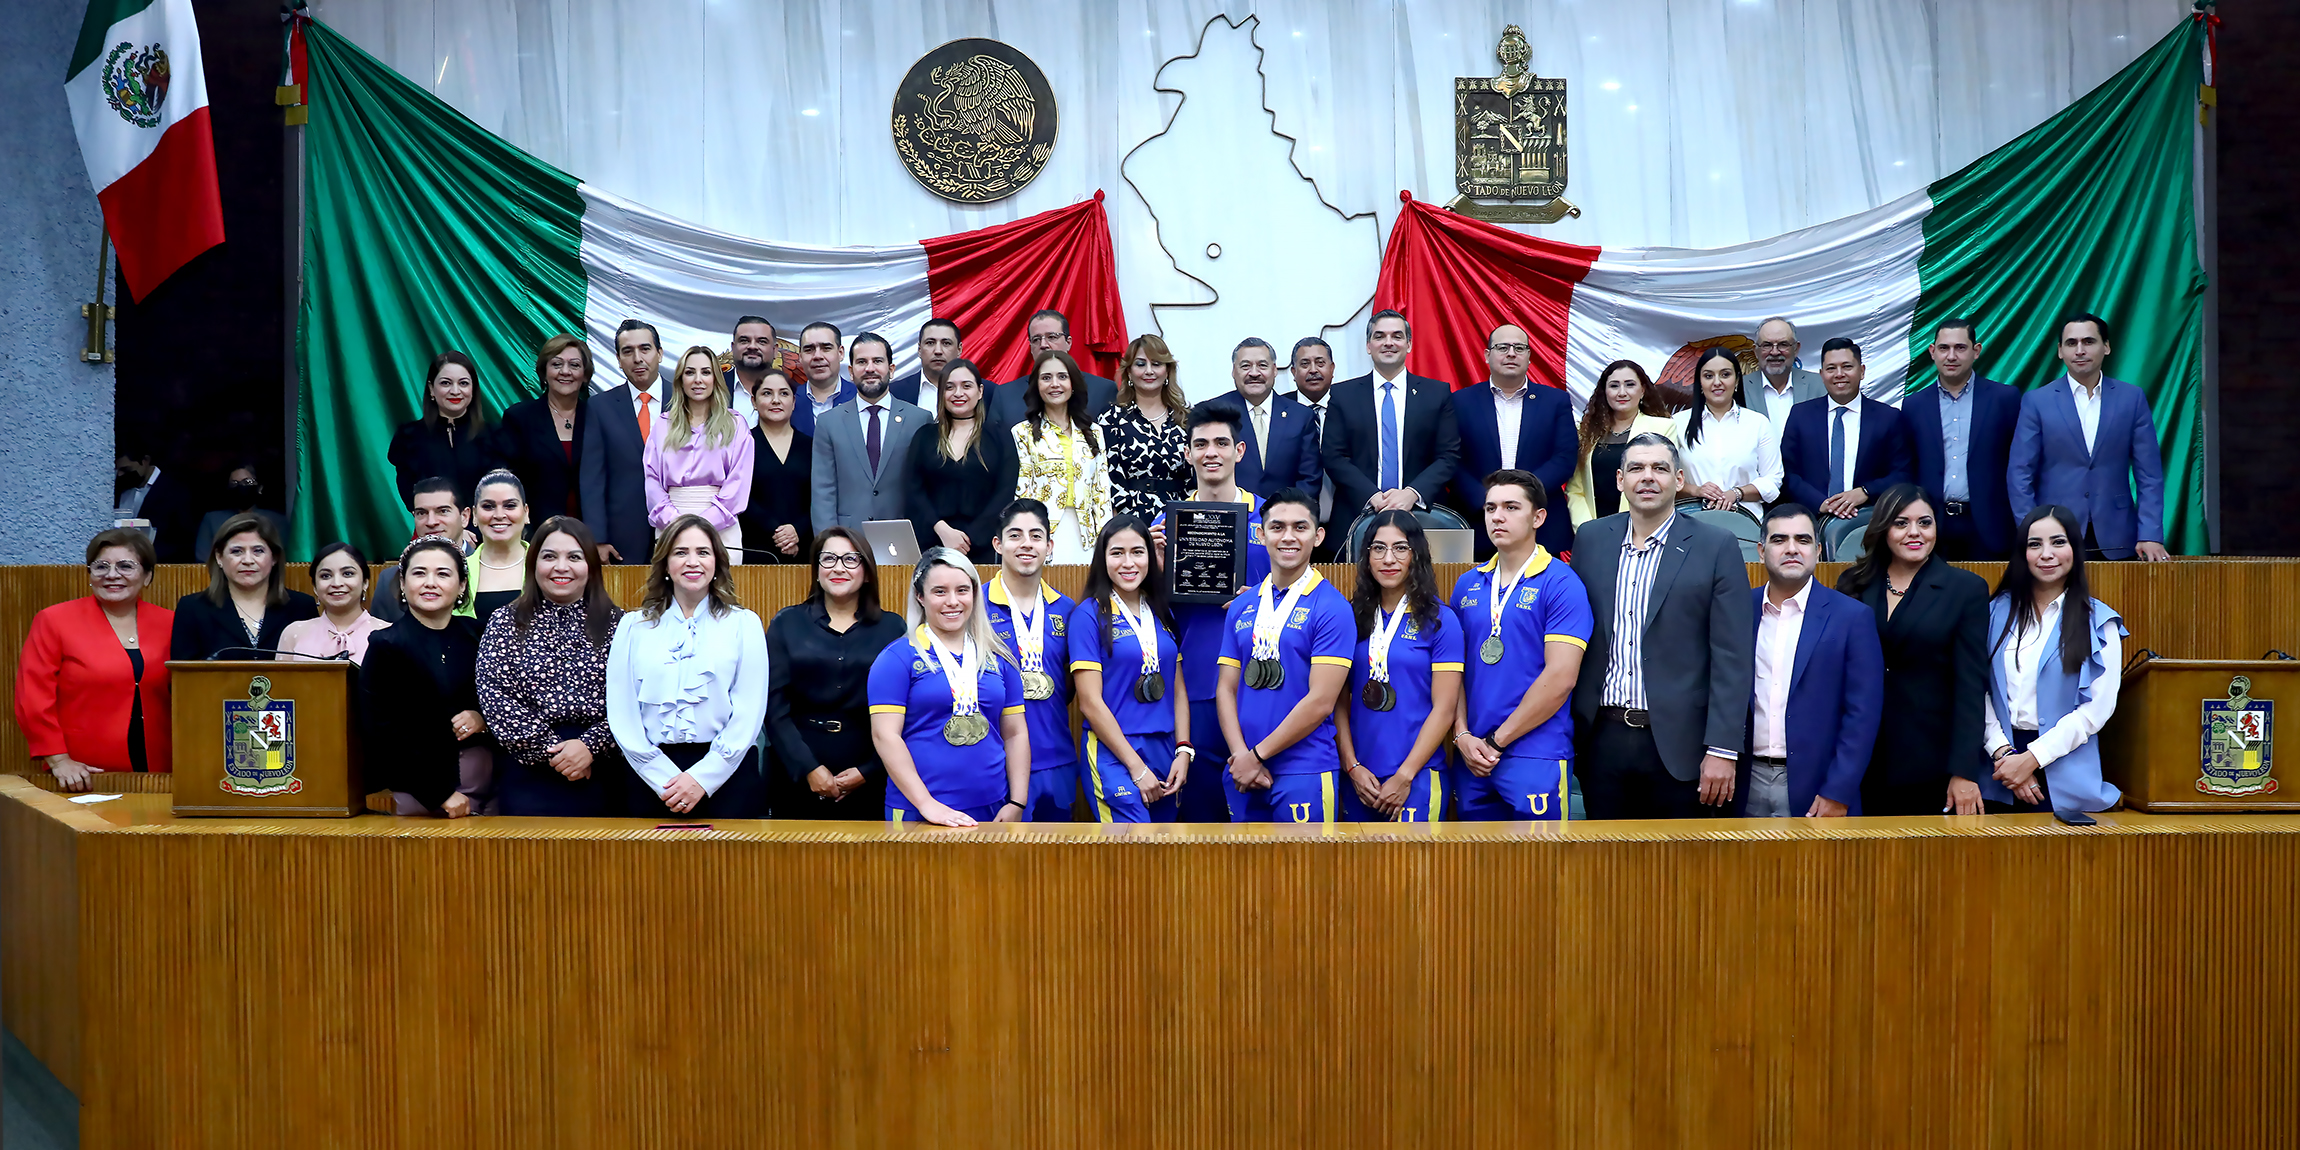 Reconoce Congreso Nuevo León liderazgo deportivo de UANL